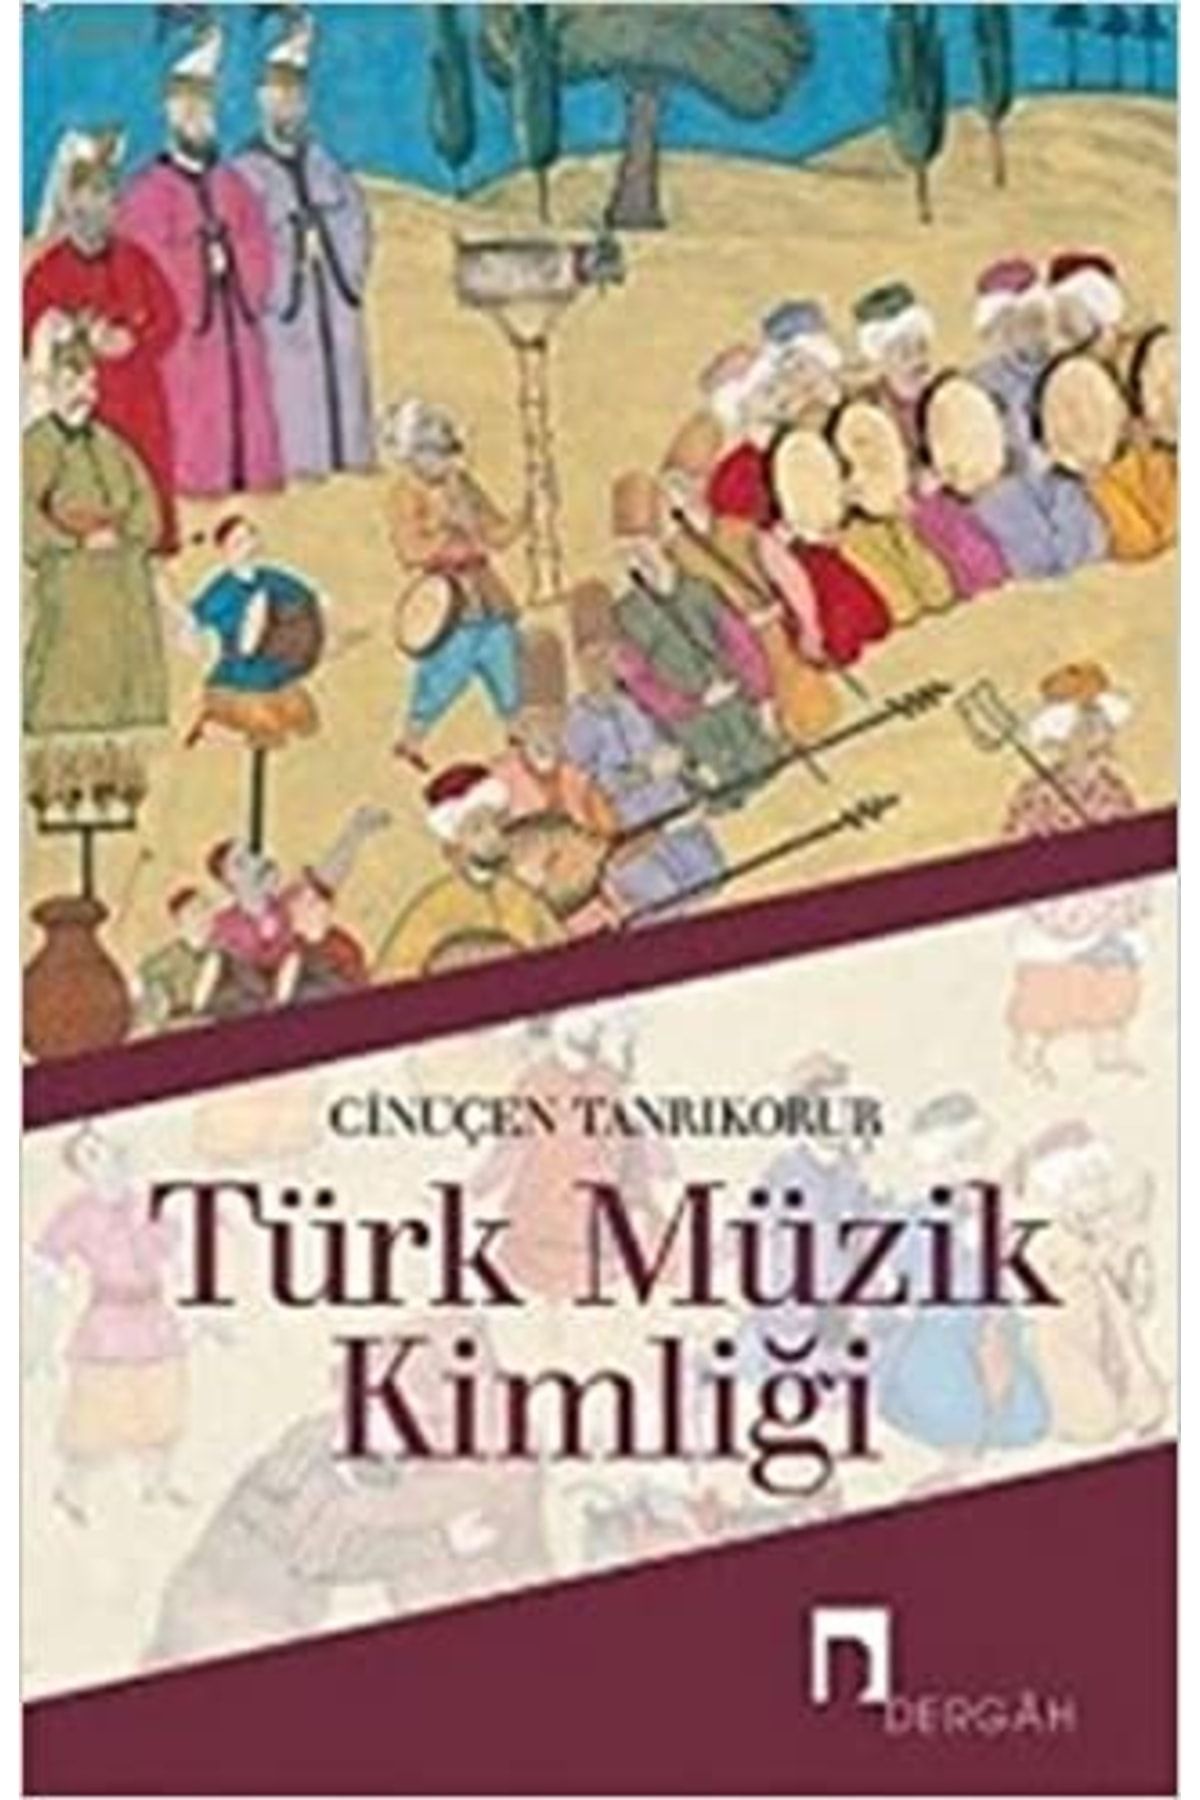 Dergah Yayınları Türk Müzik Kimliği//cinuçen Tanrıkorur